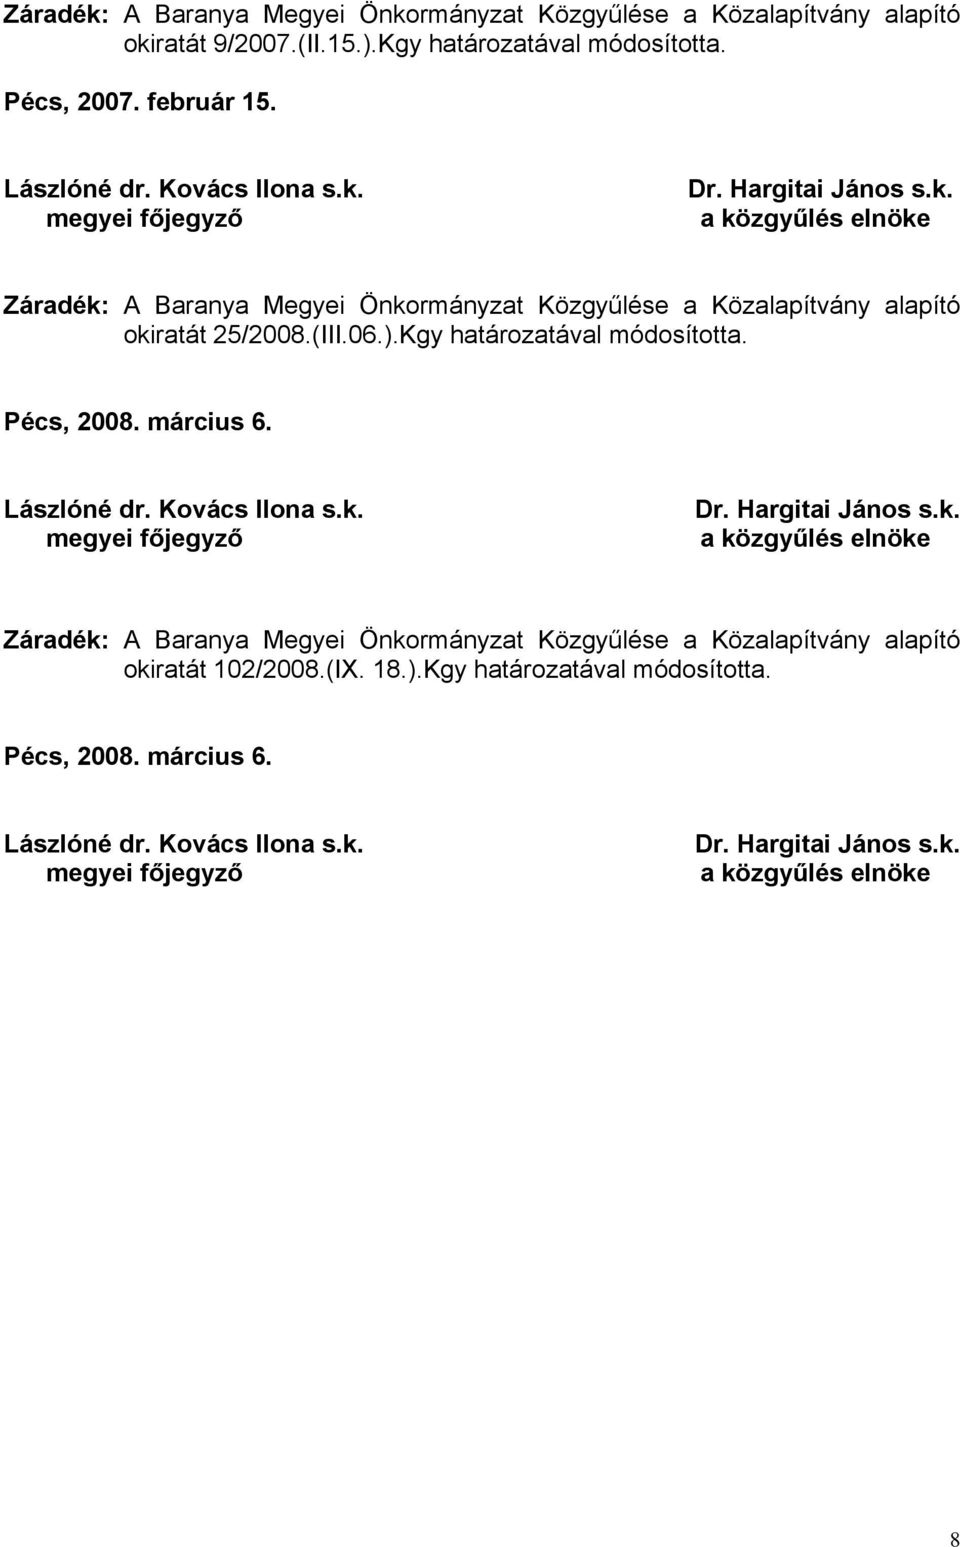 Pécs, 2008. március 6. megyei Dr. Hargitai János s.k. a közgyűlés elnöke okiratát 102/2008.(IX. 18.